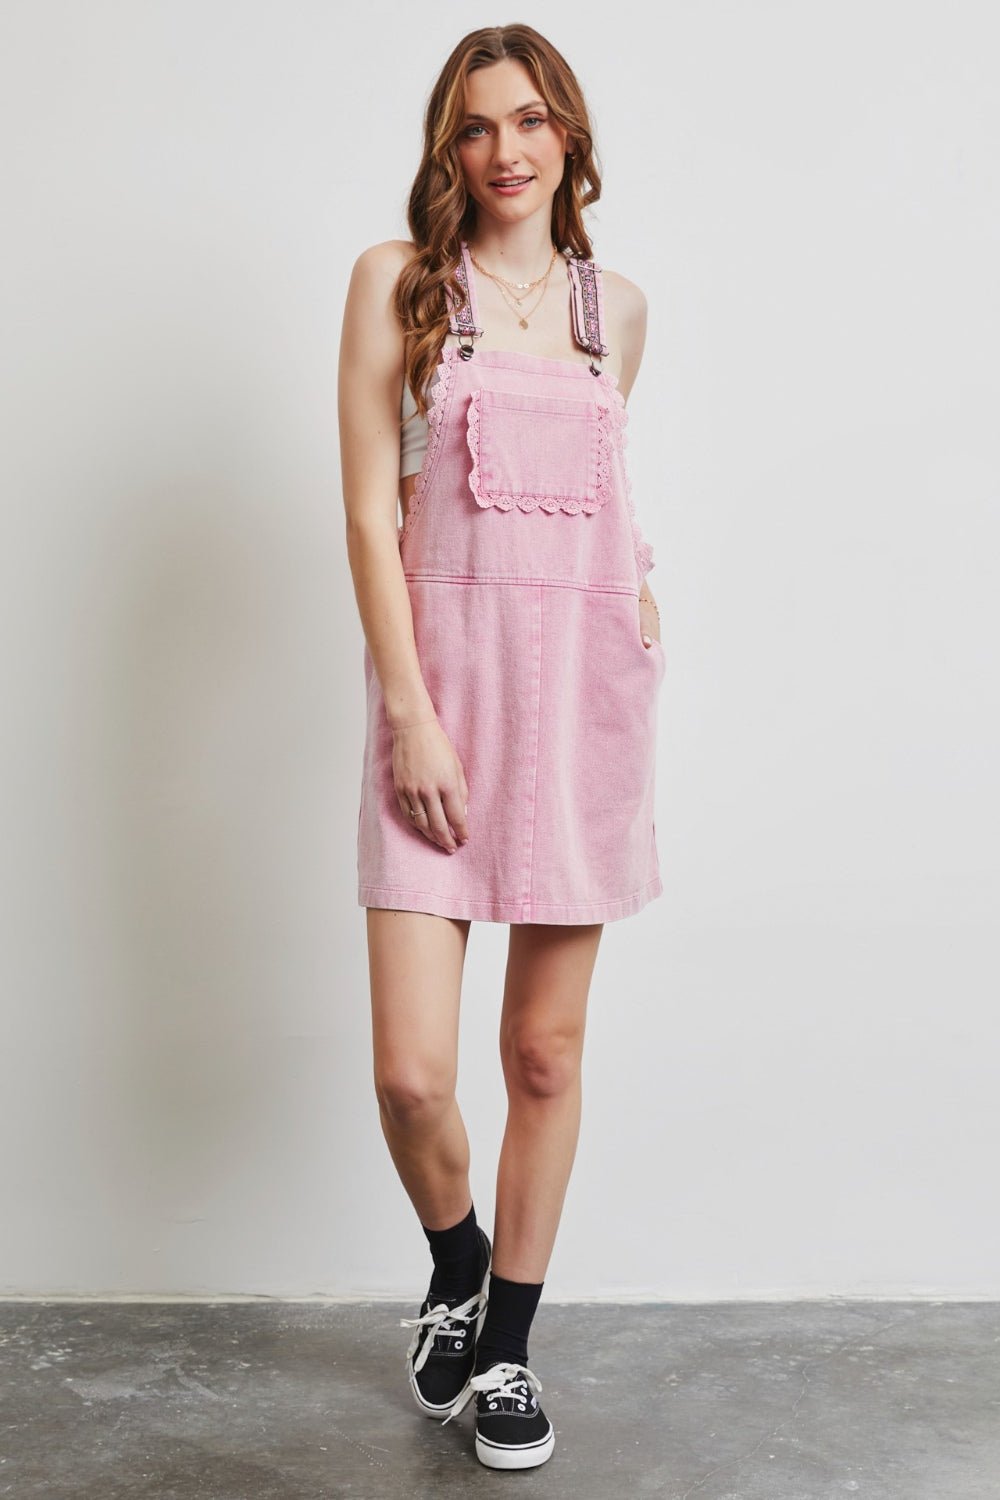 Lace Trim Overall Mini Dress in Washed PinkMini DressHEYSON